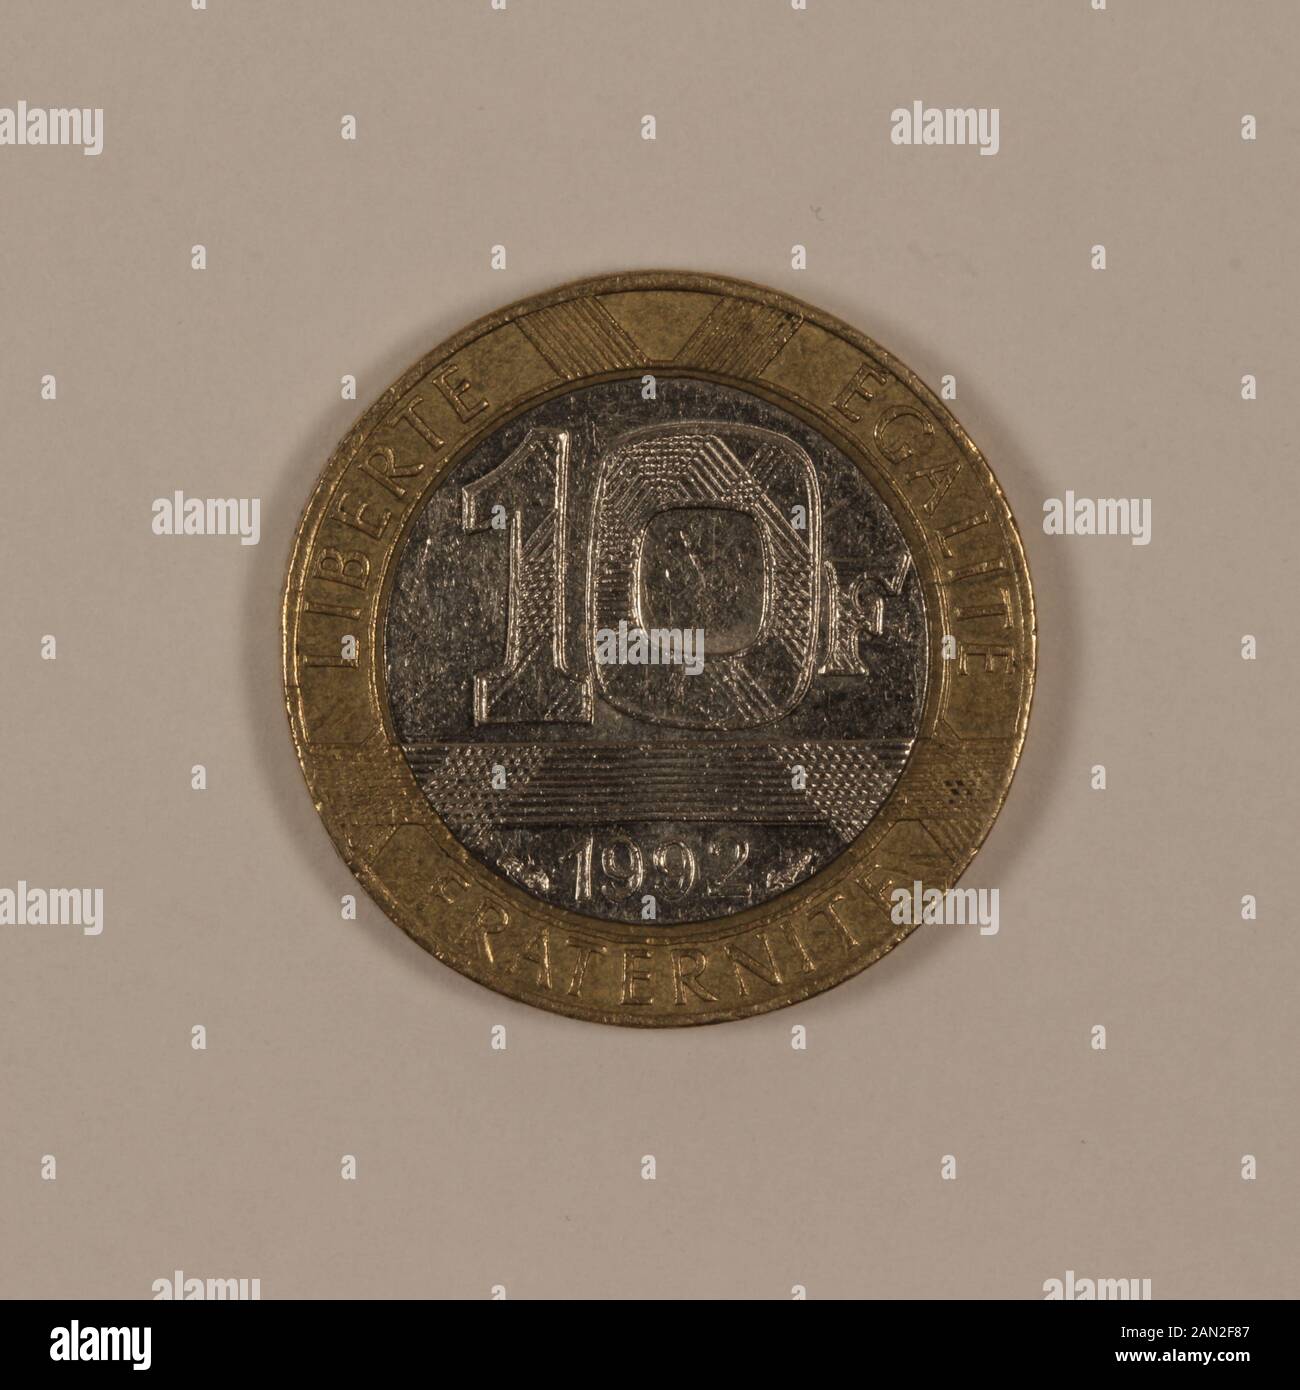 Vorderseite einer ehemaligen Französischen 10 Franc Münze Foto Stock